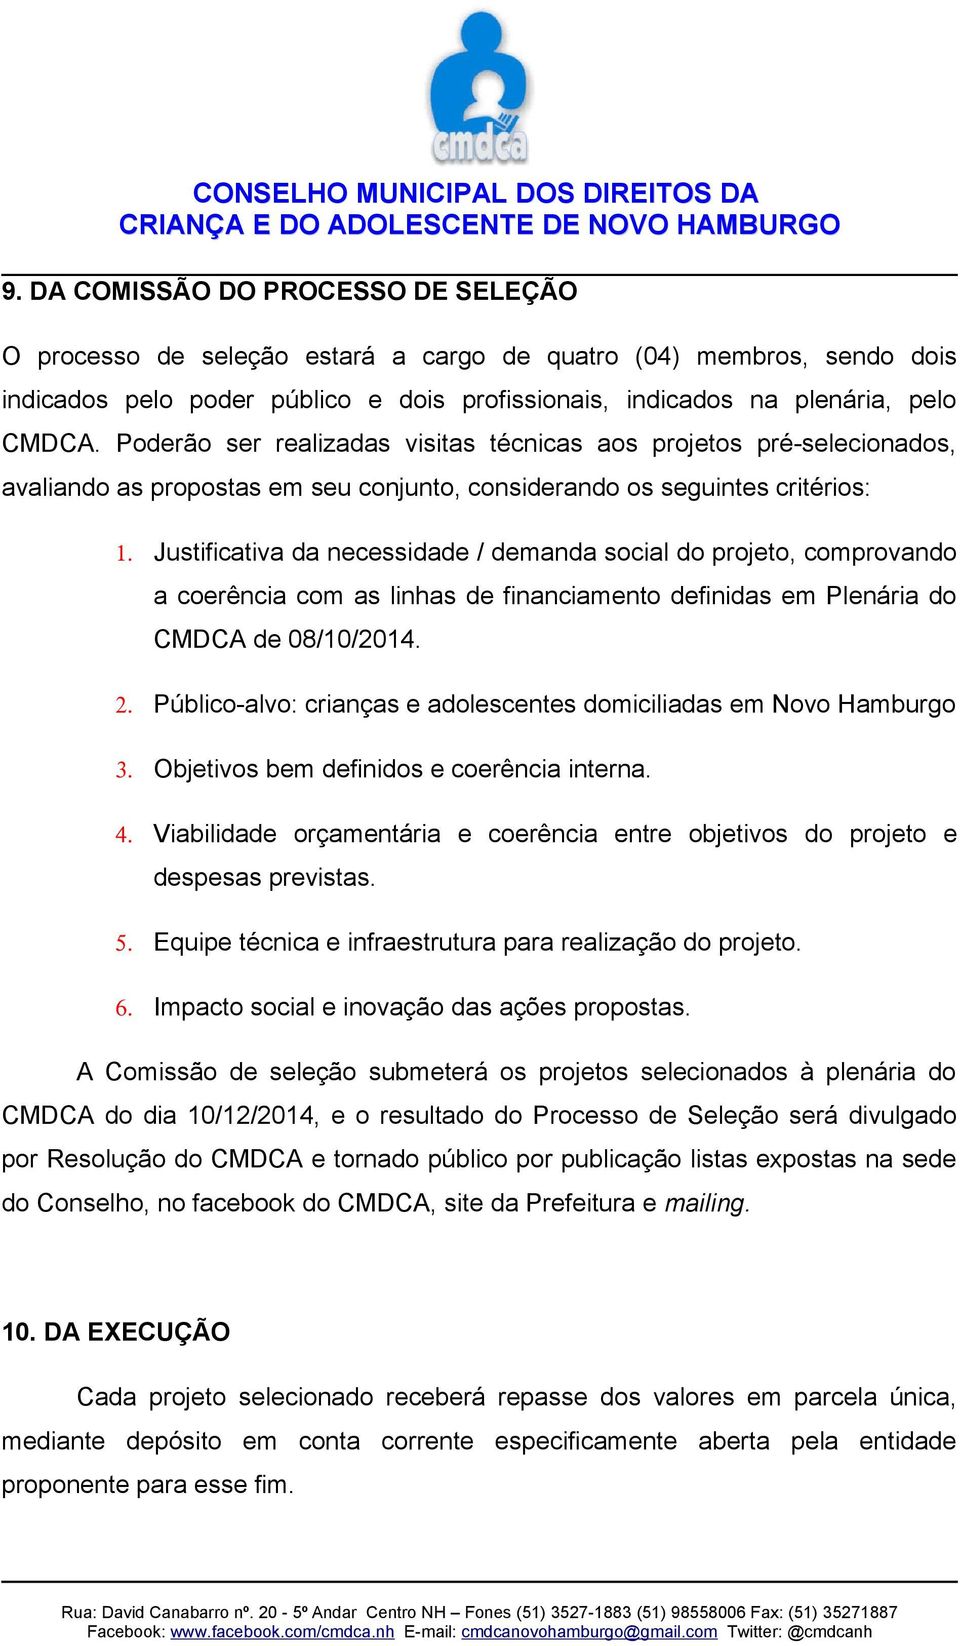 Justificativa da necessidade / demanda social do projeto, comprovando a coerência com as linhas de financiamento definidas em Plenária do CMDCA de 08/10/2014. 2.